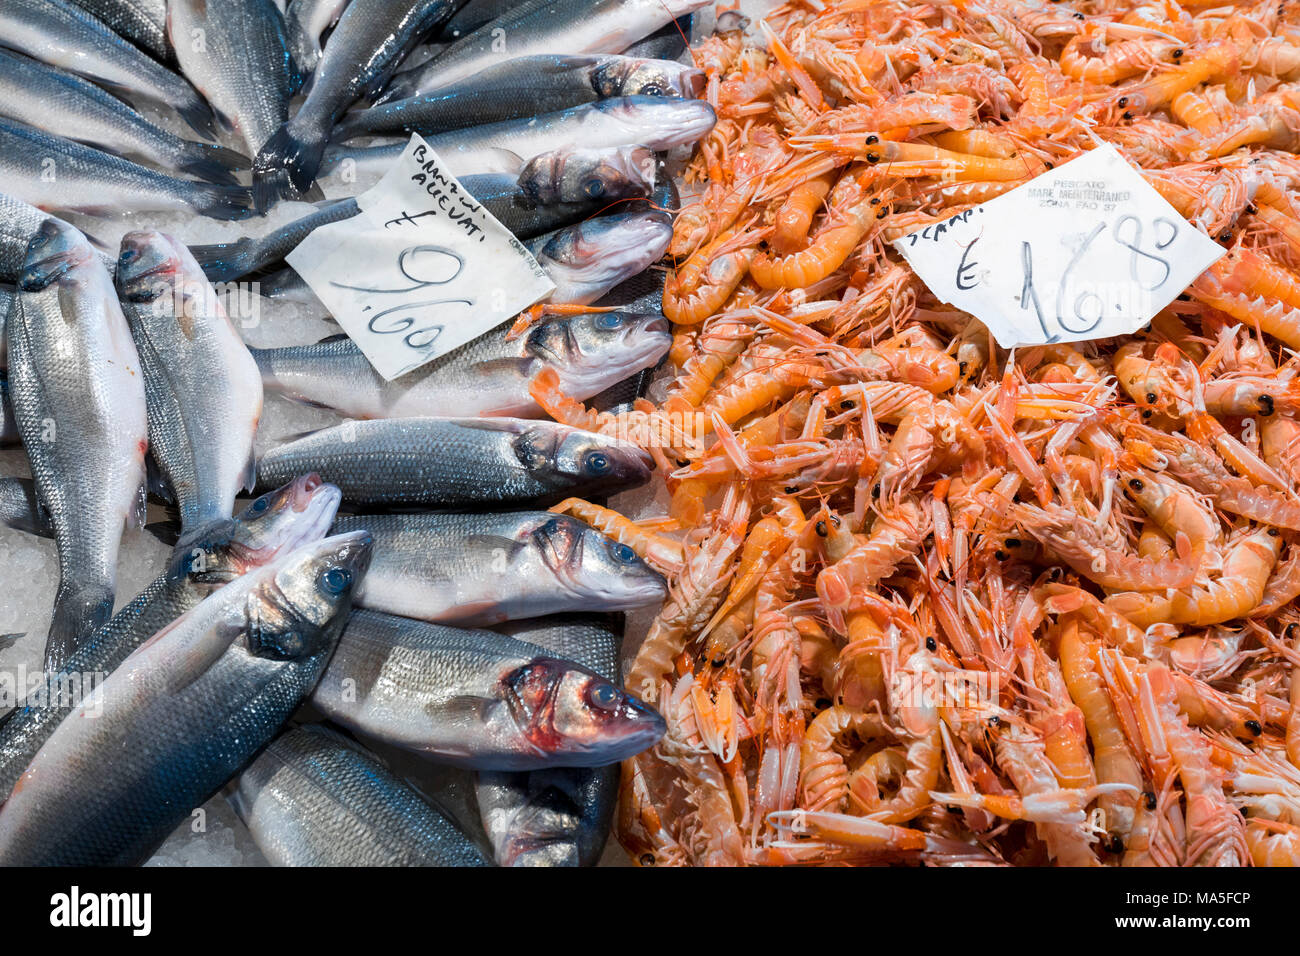 Fish on sale at fish market near Rialto, Venice, Veneto Italy Stock Photo